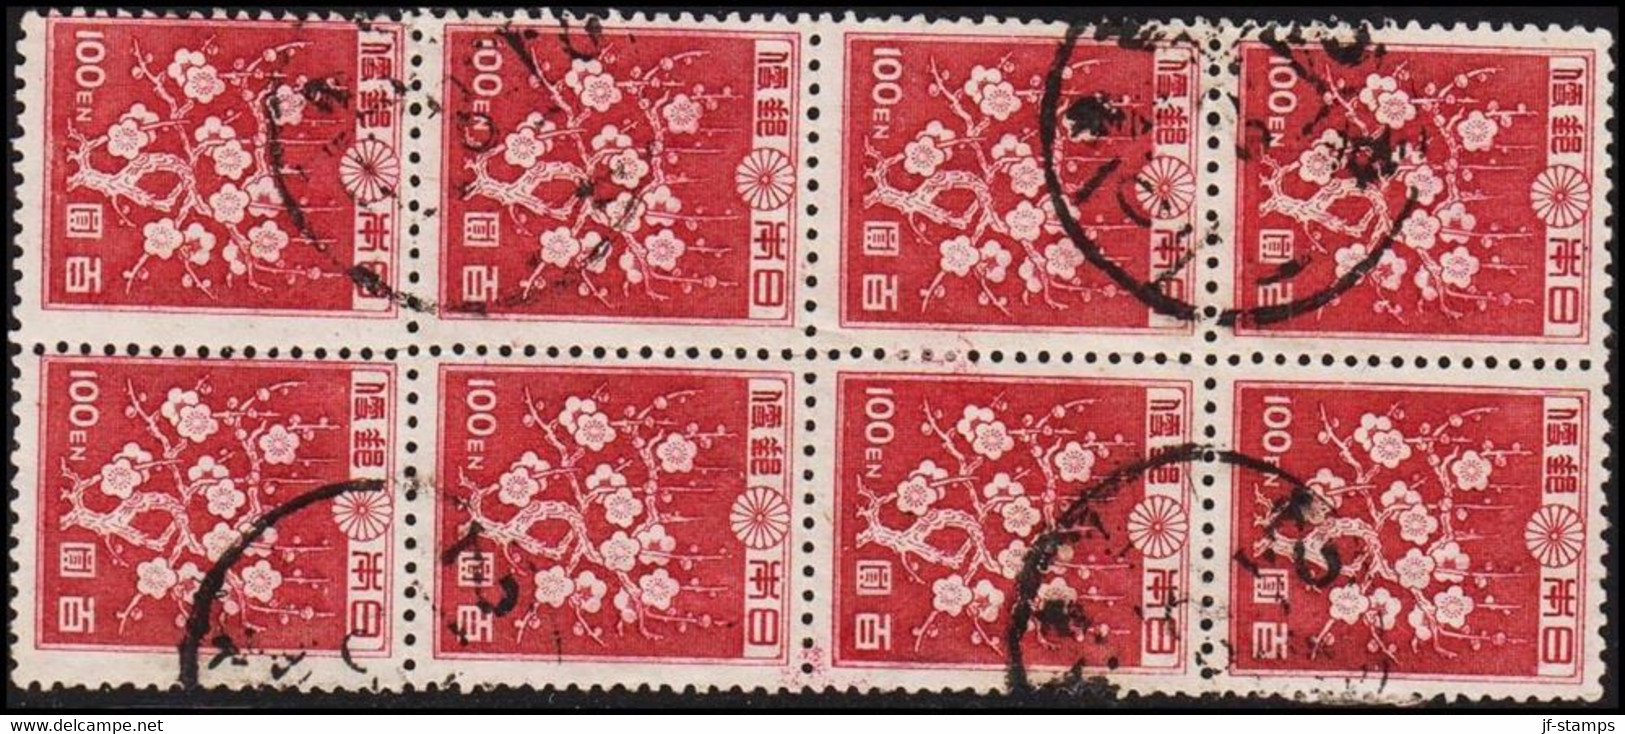 1947. JAPAN. Flower Painting In Lack 8-block 100 EN. Unusual.  (Michel 359) - JF522612 - Used Stamps